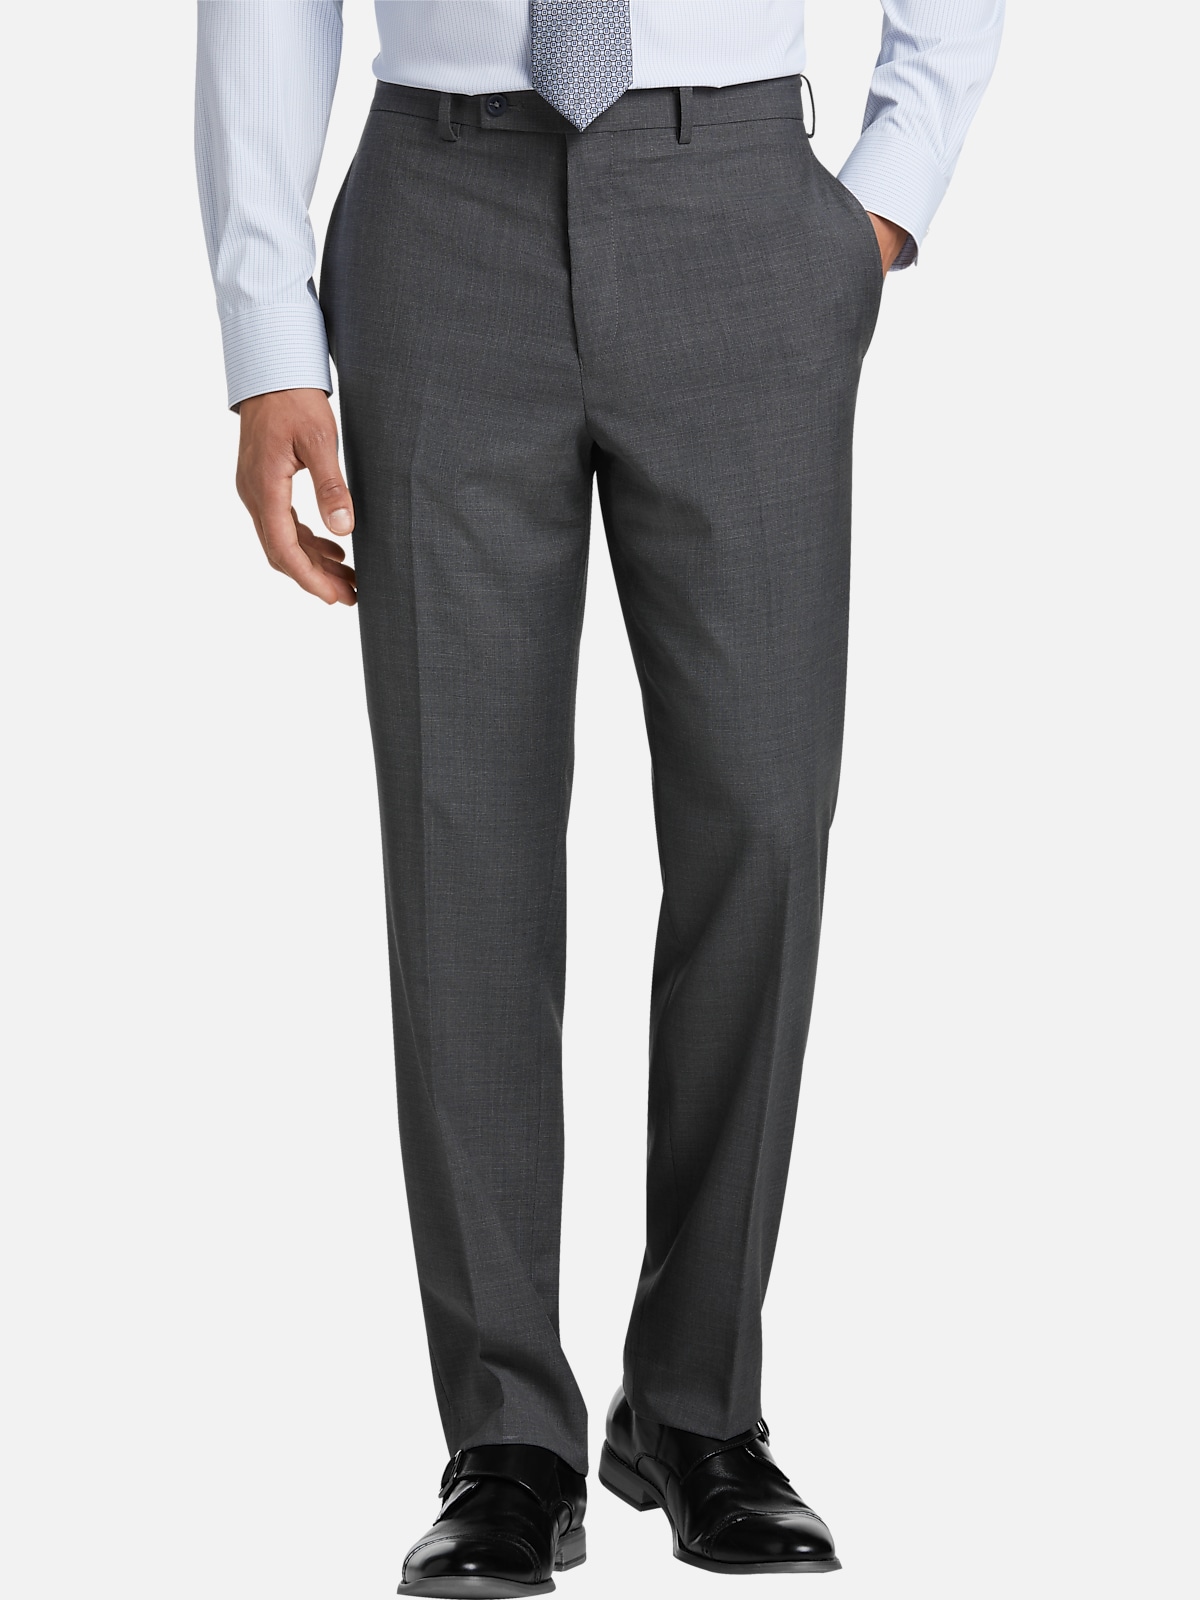 Michael Strahan Classic Fit Suit Separates Pants | Pants| Men's Wearhouse